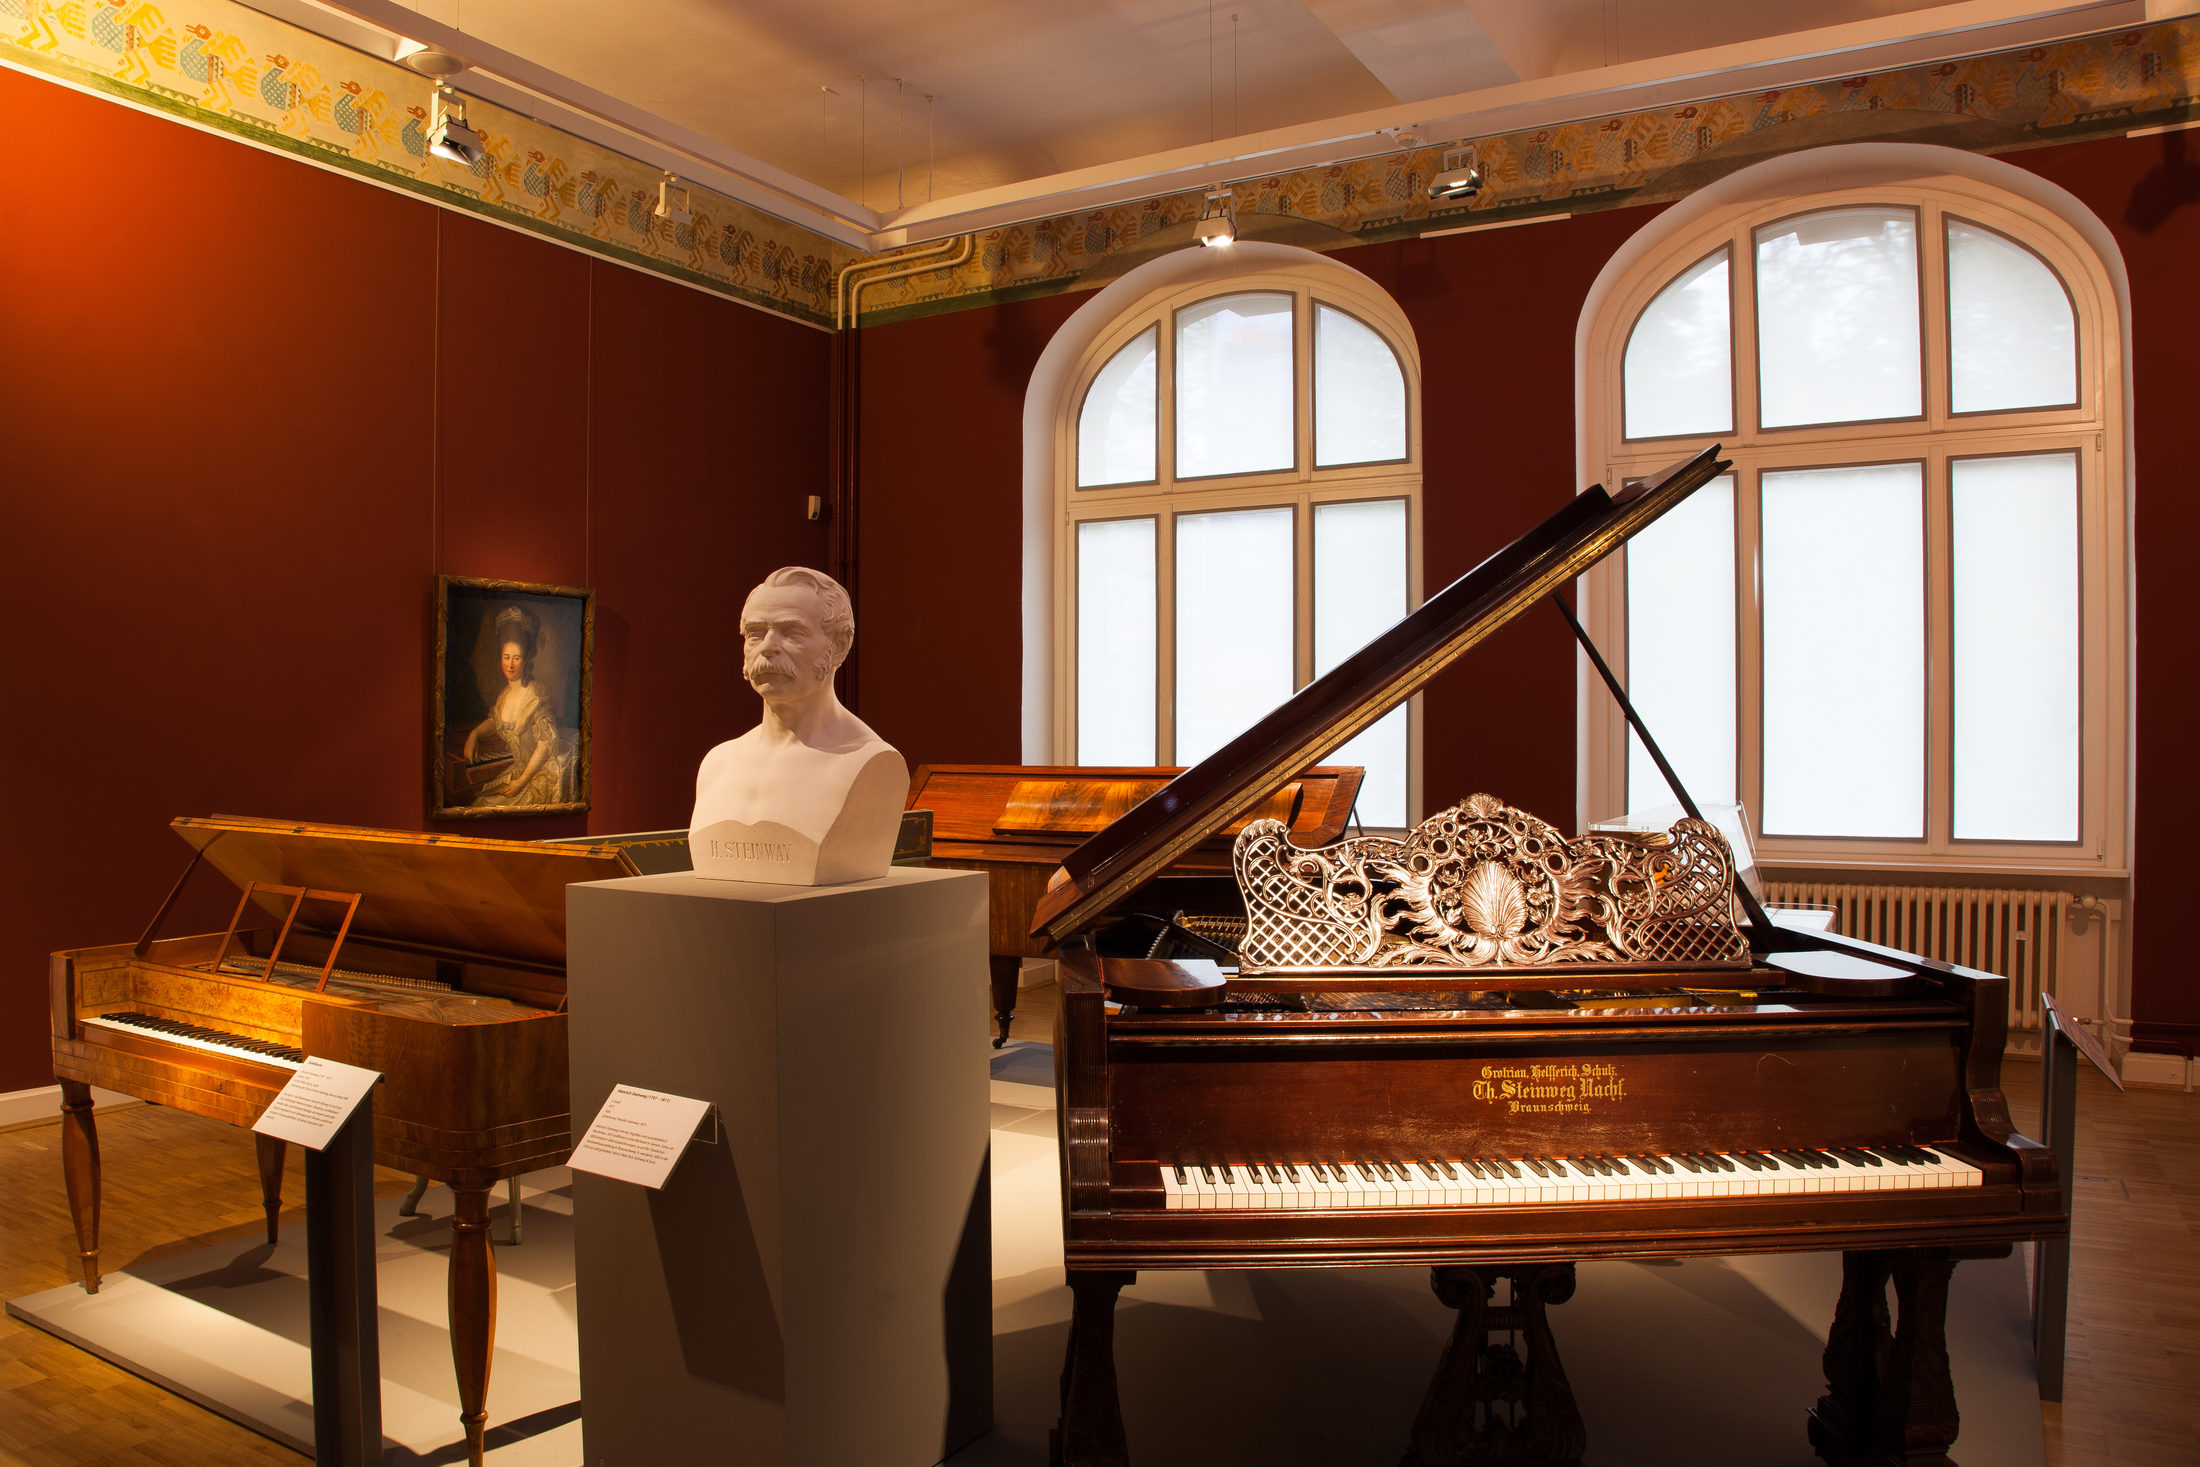 Einblick in die Ausstellungsräume des Hauses am Löwenwall mit Klavieren aus unterschiedlichen Zeiten, einer Gips-Büste und einem Gemälde (Wird bei Klick vergrößert)